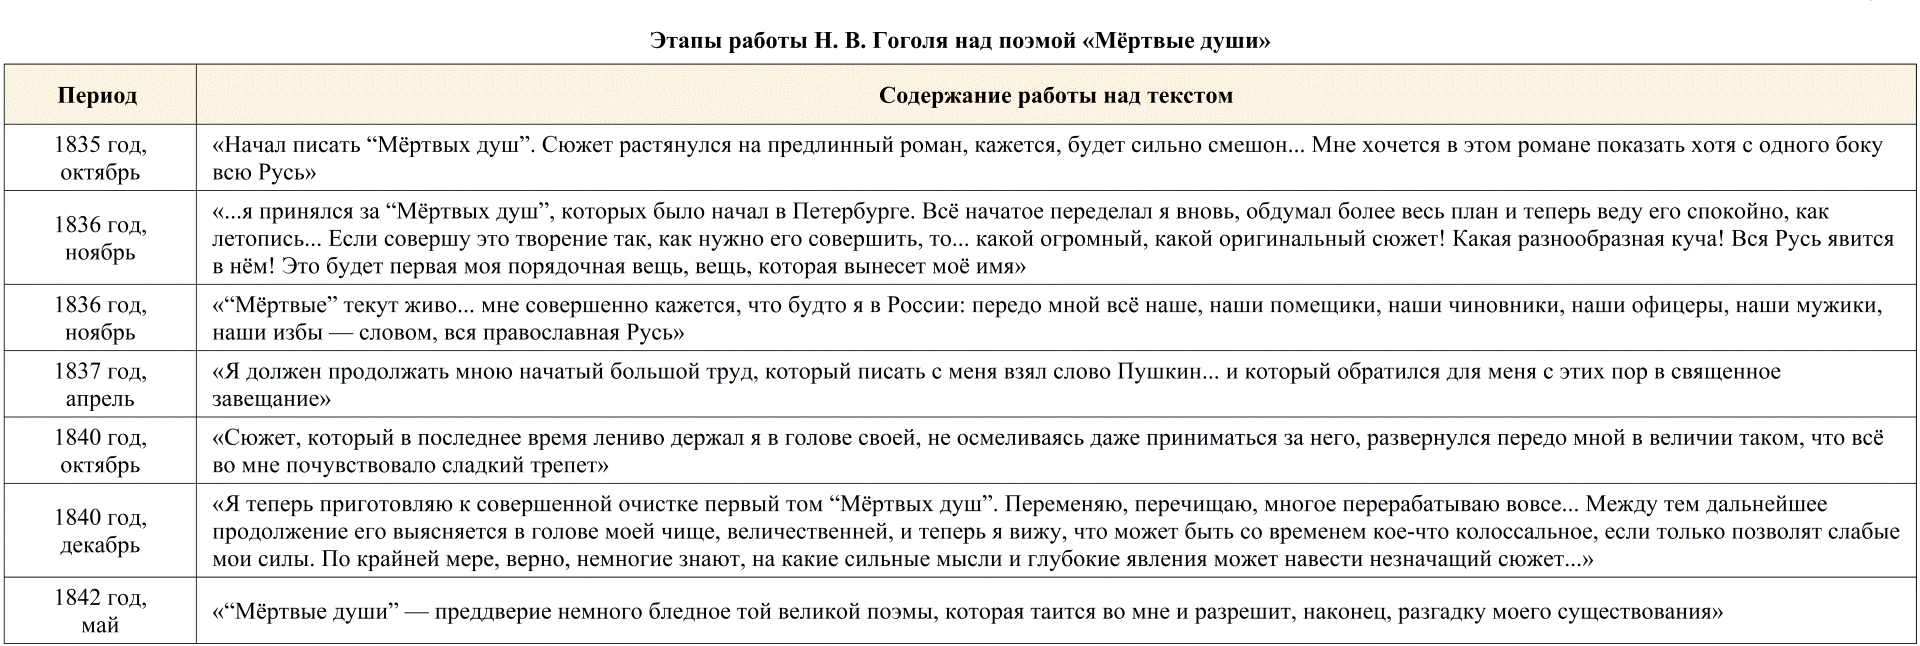 Сочинение по теме Помещичья Русь в поэме Н. В. Гоголя 